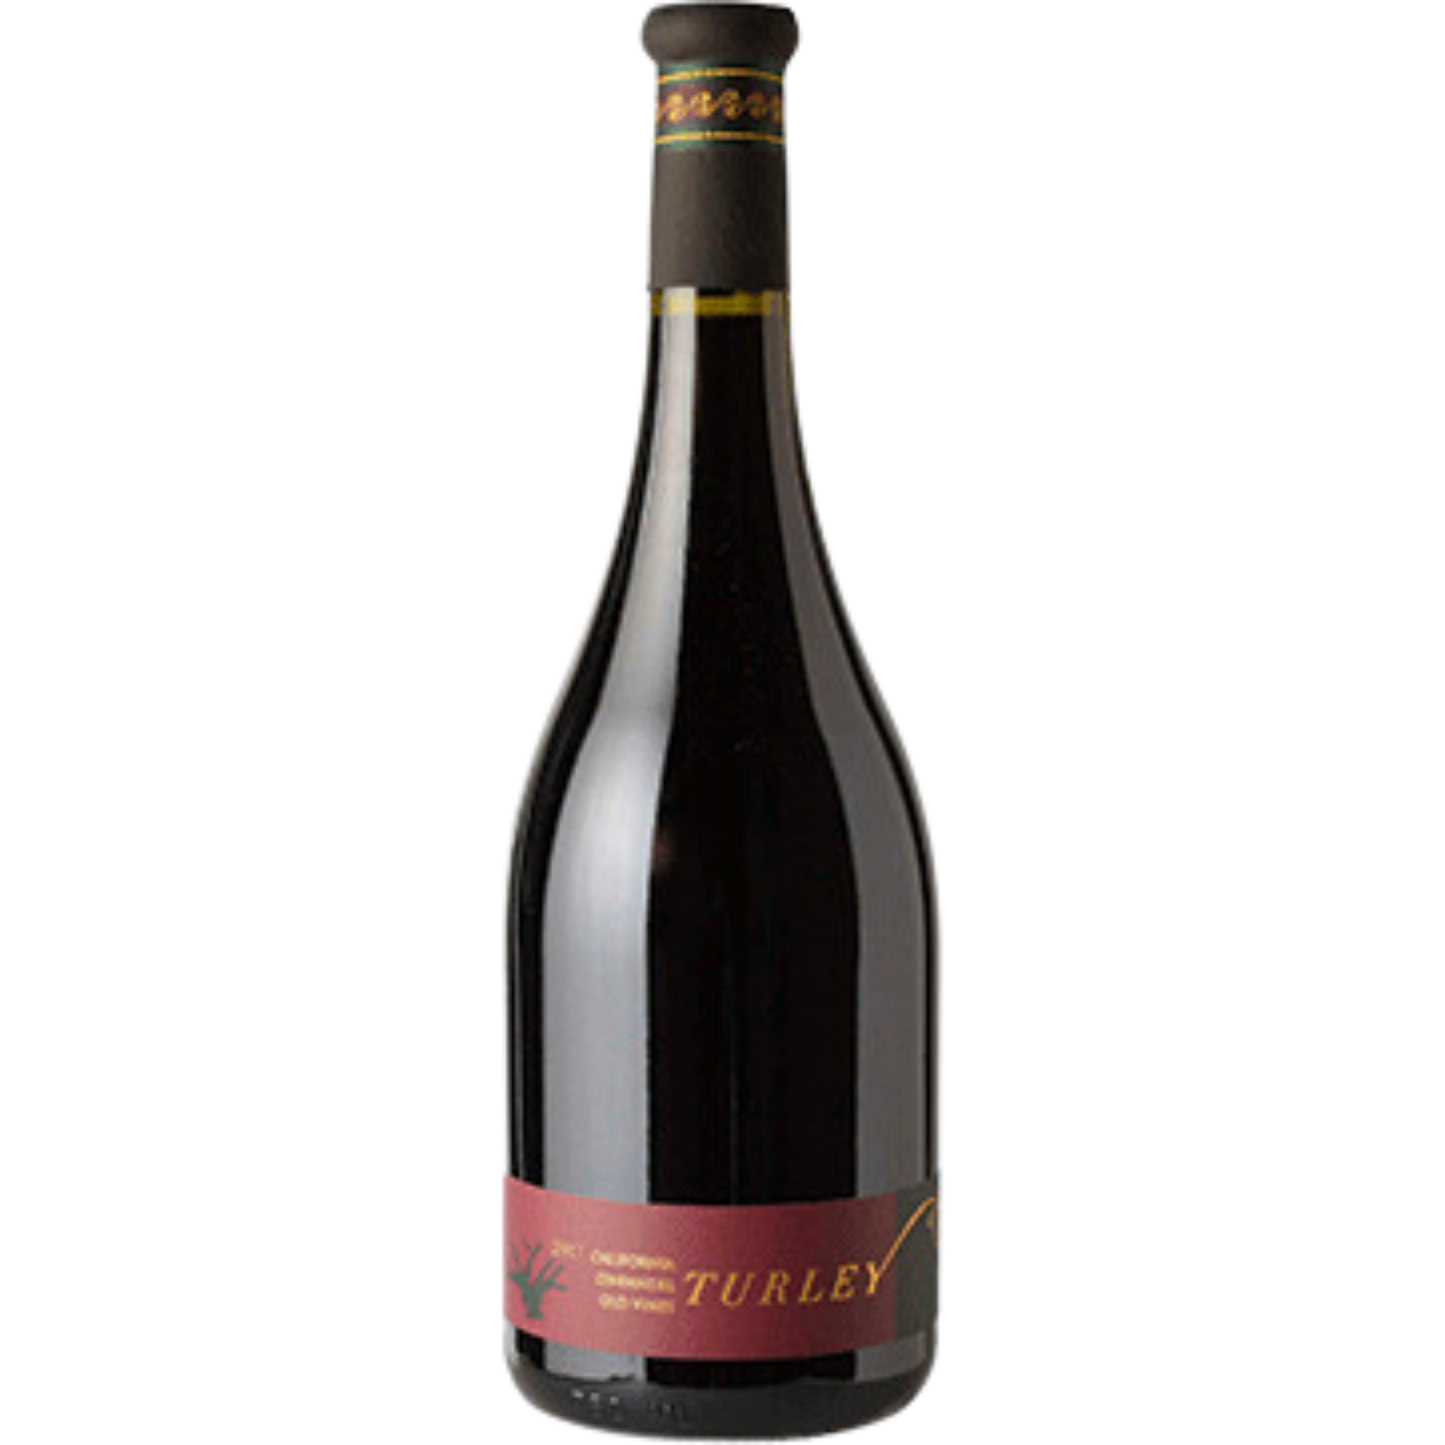 Turley Zinfandel Old Vines 2020 (6 Bottle Case)